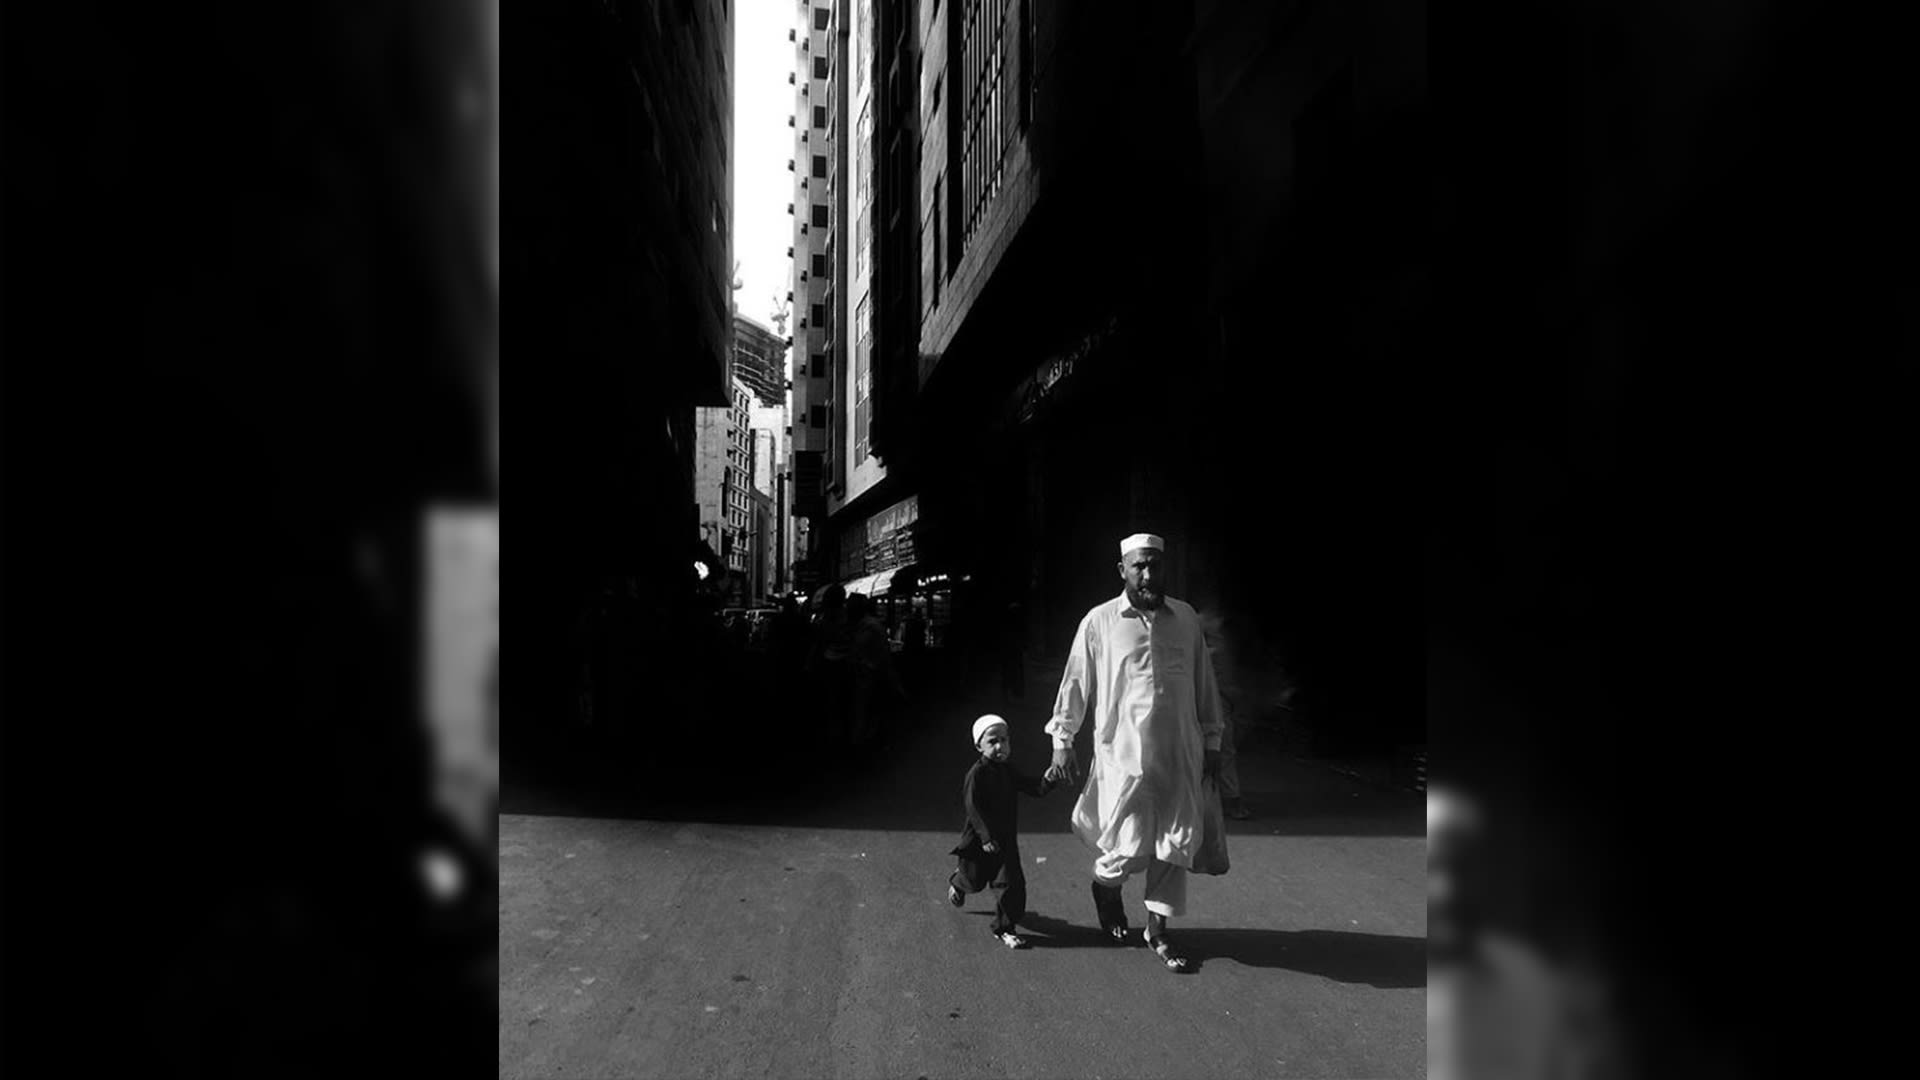 لكل لقطة ملهمها.. مصور سعودي يرصد قصصاً إنسانية بطريقة بلاغية